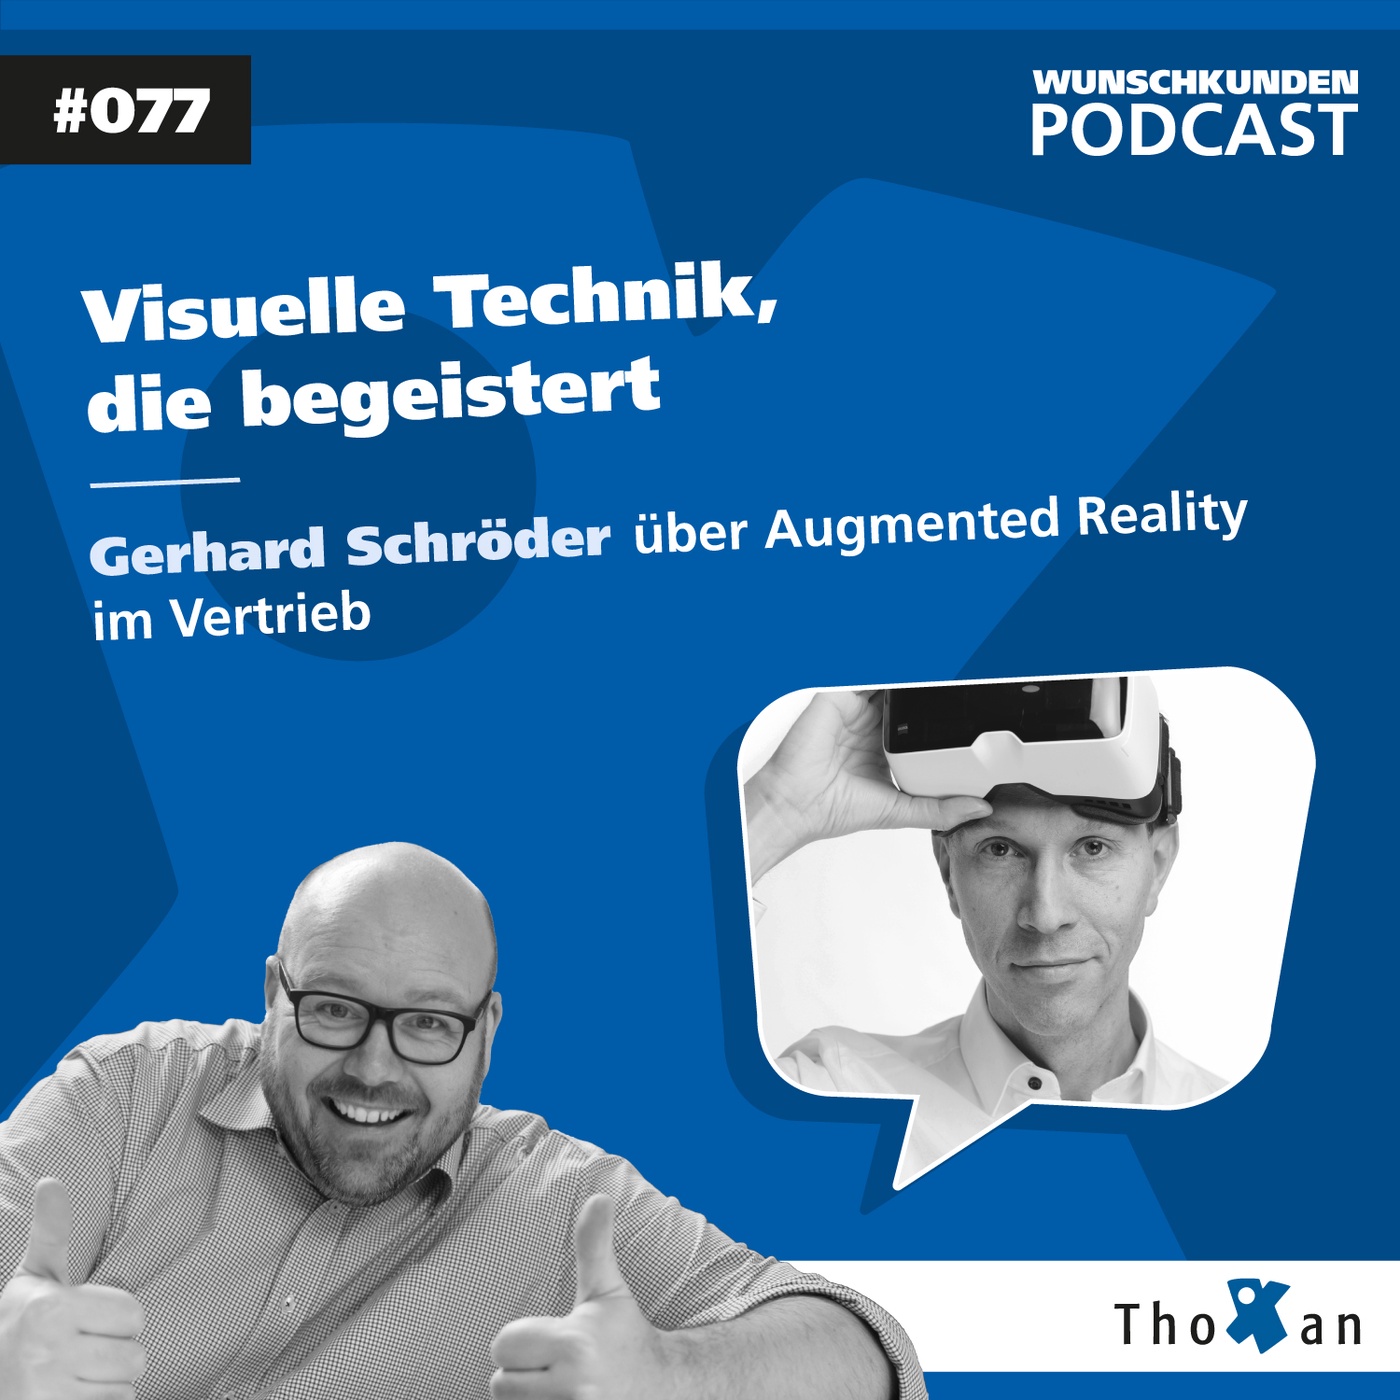 Visuelle Technik, die begeistert: Gerhard Schröder über Augmented Reality im Vertrieb